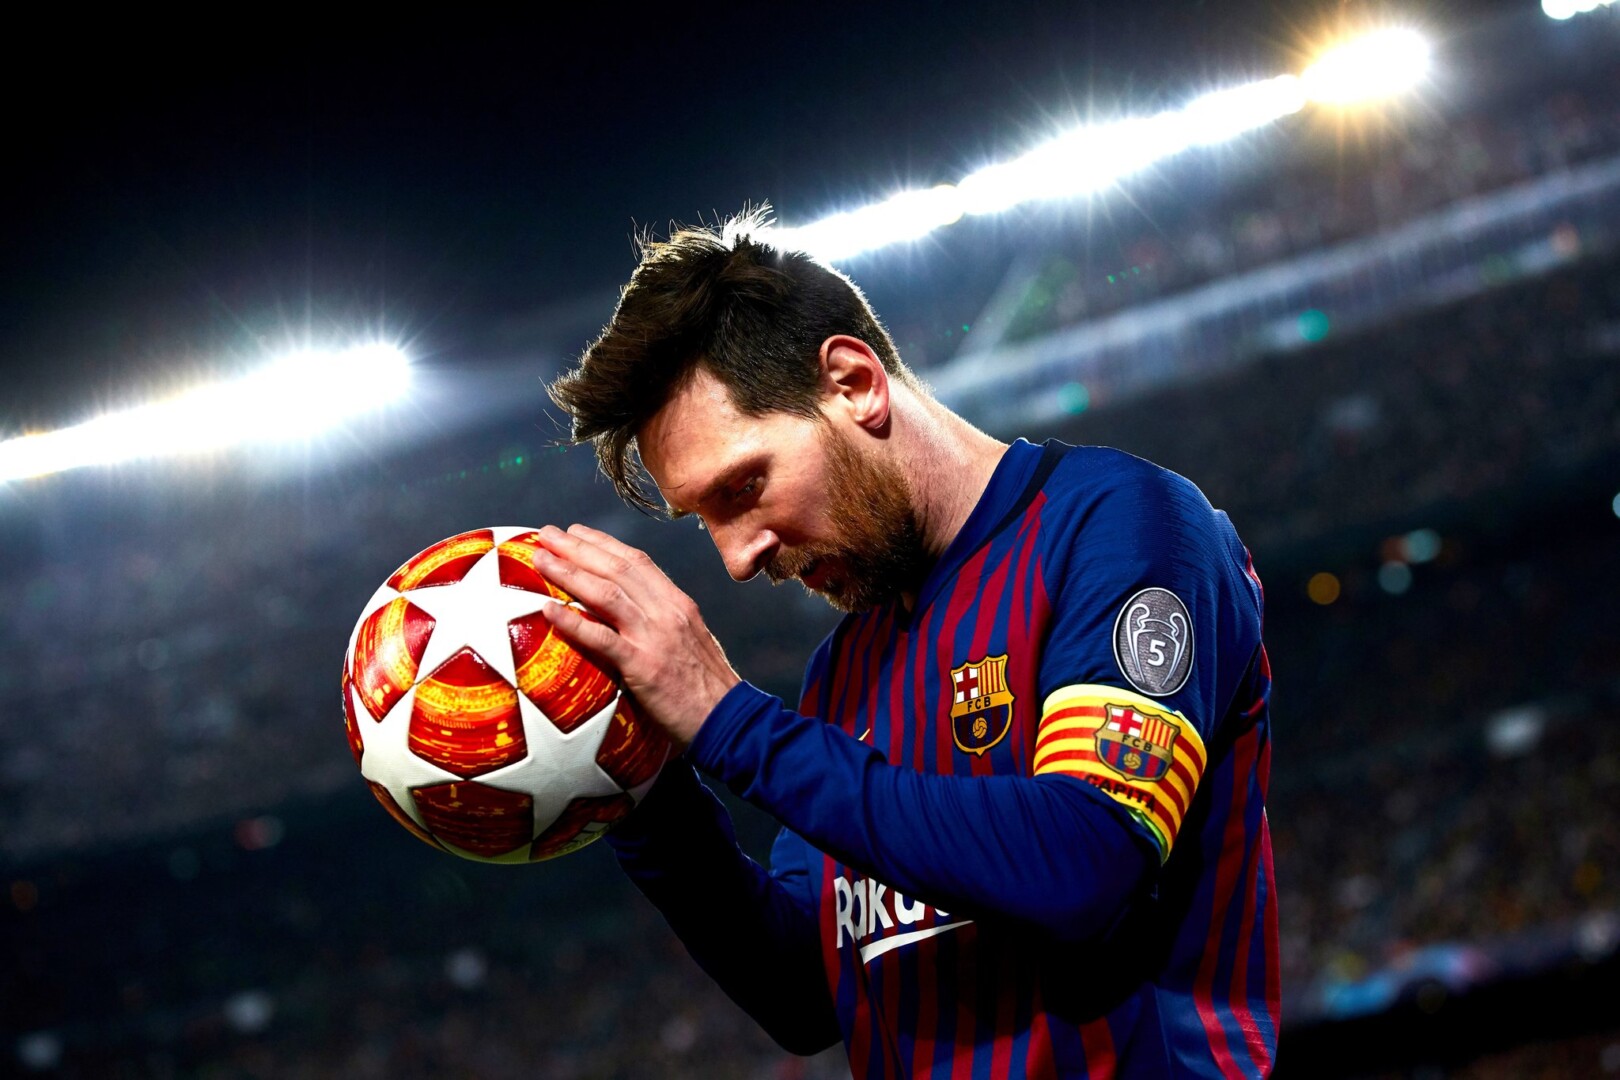 Lương cao nhất Messi từng nhận được?